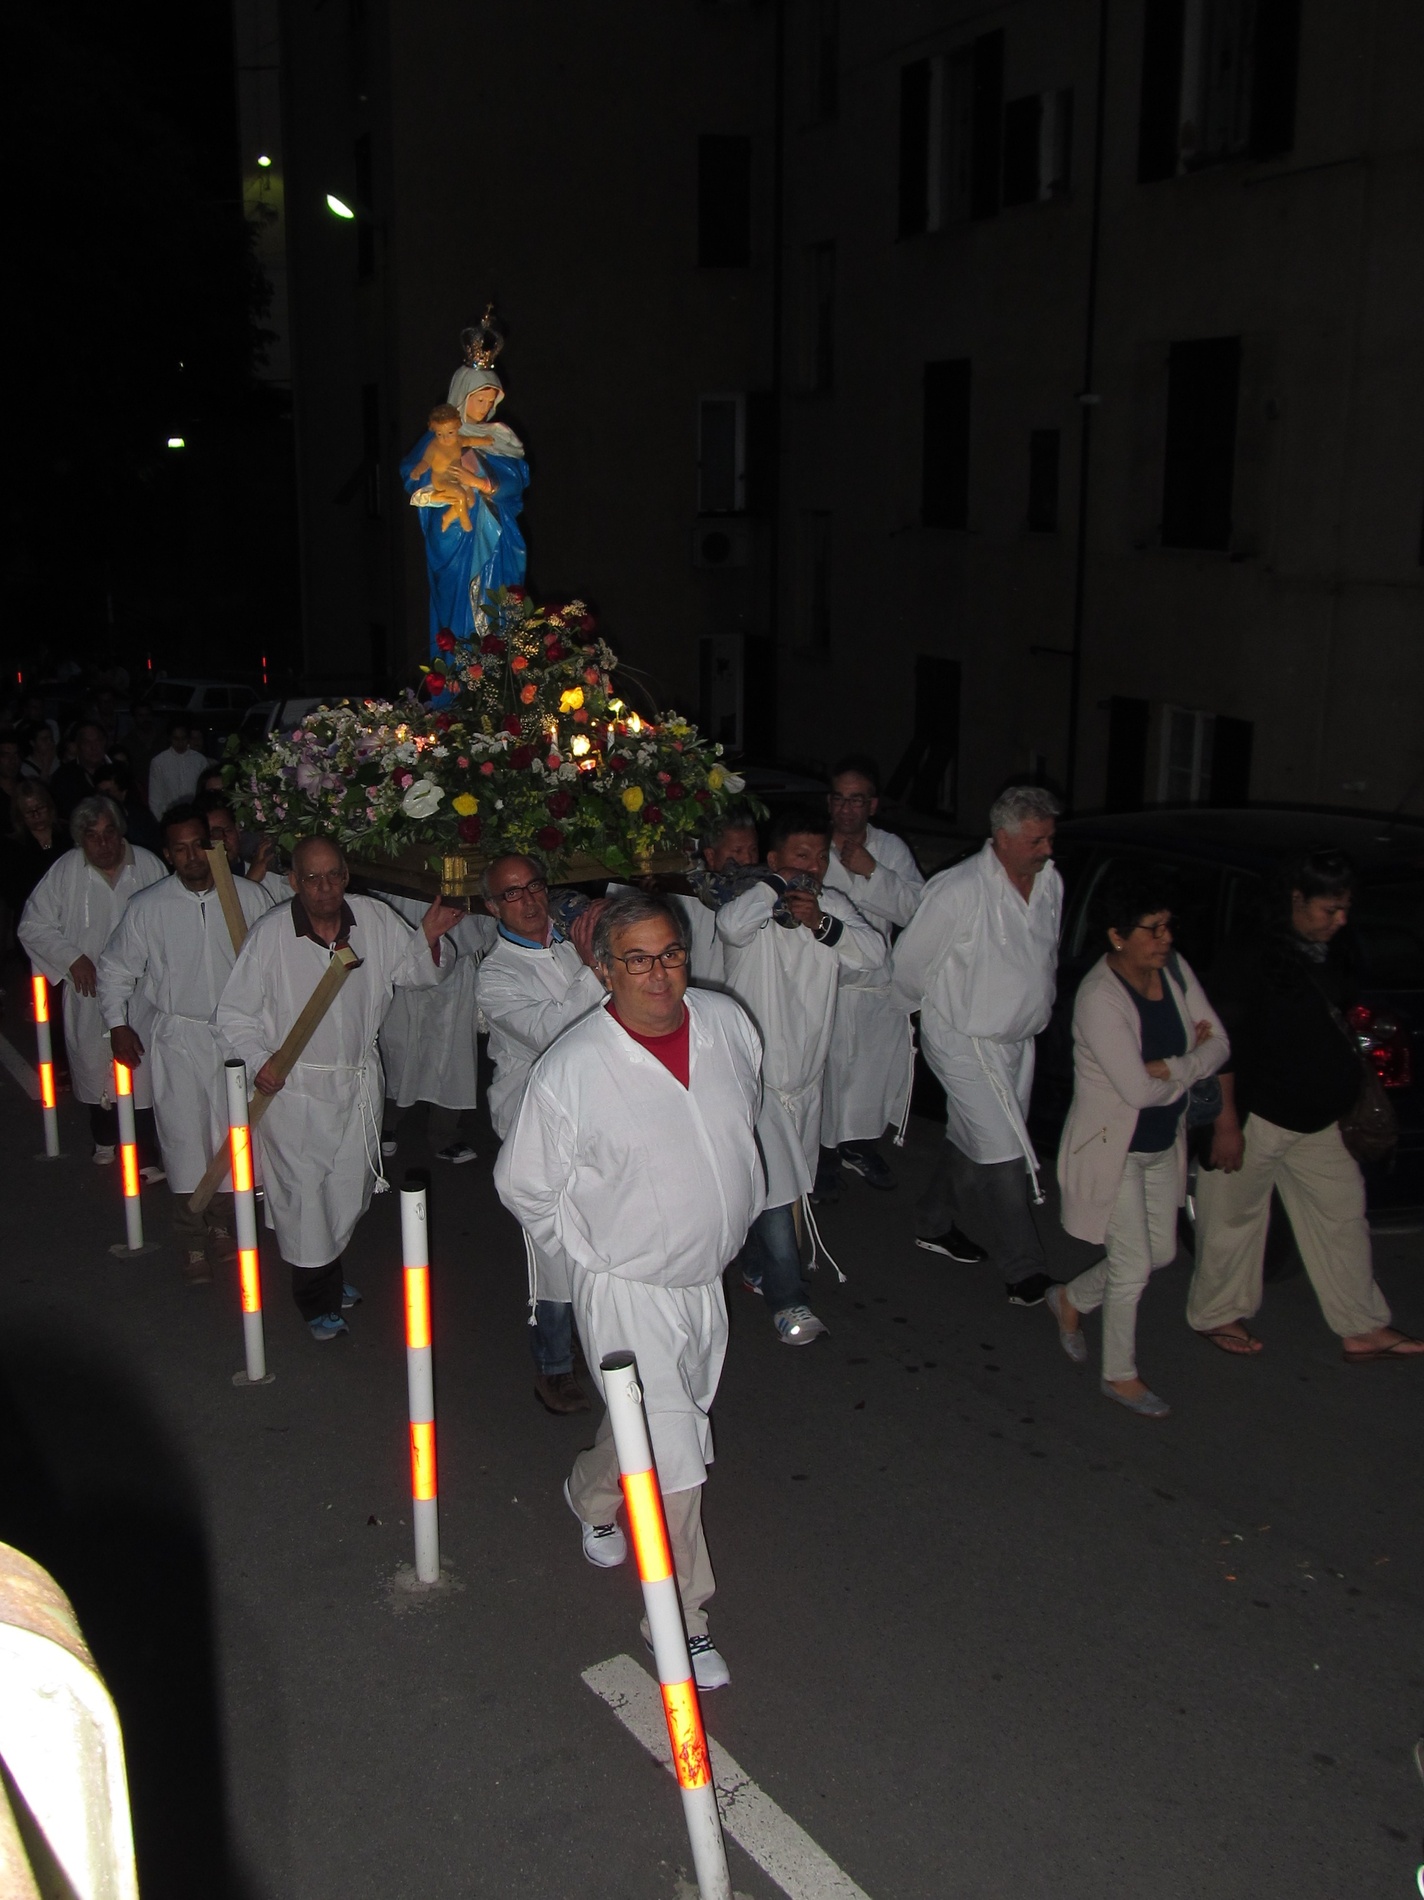 processione-madonna-2015-05-31-21-09-33